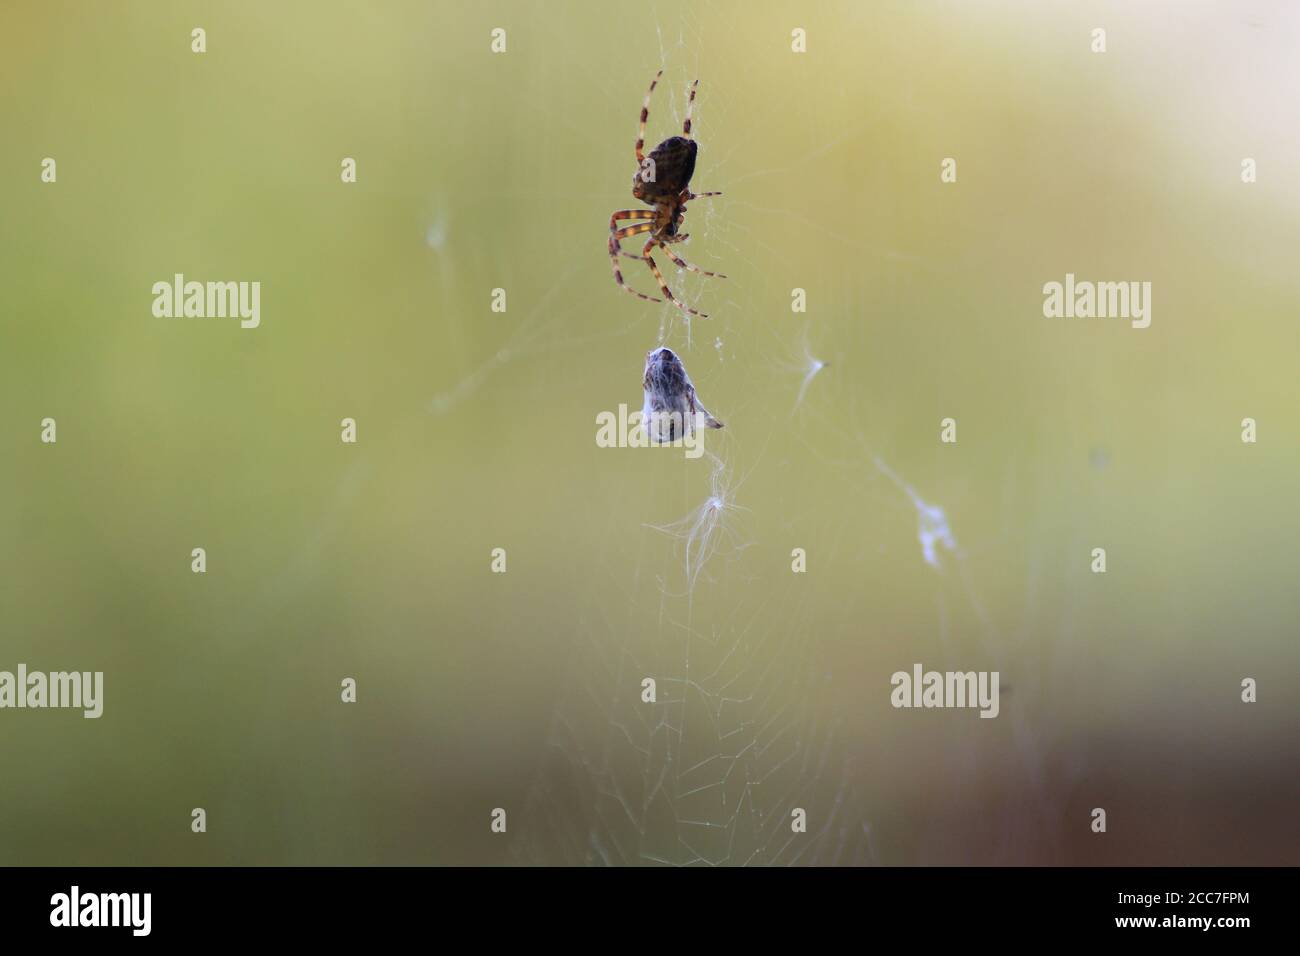 Fliegen Sie in Spinnen Web kokoniert Stockfoto